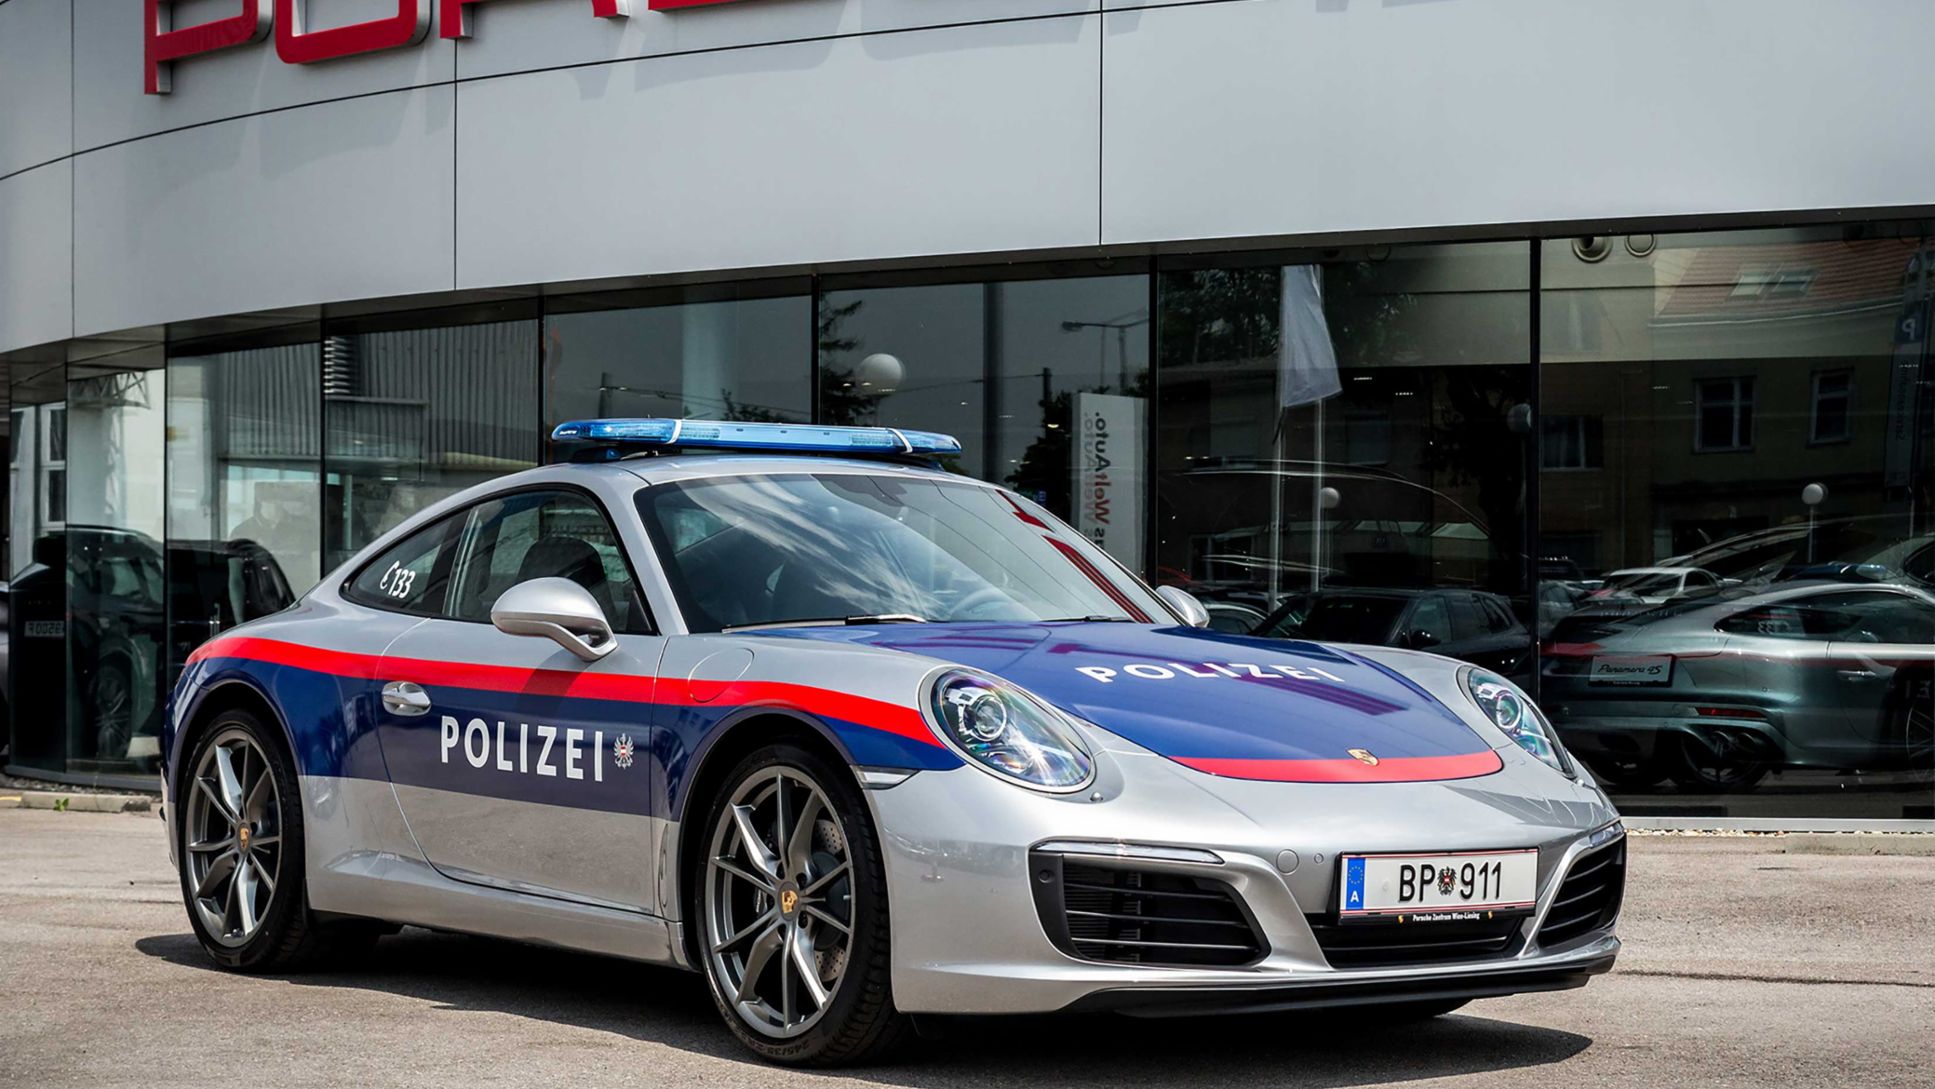 Porsche 911 on patrol - Porsche Newsroom